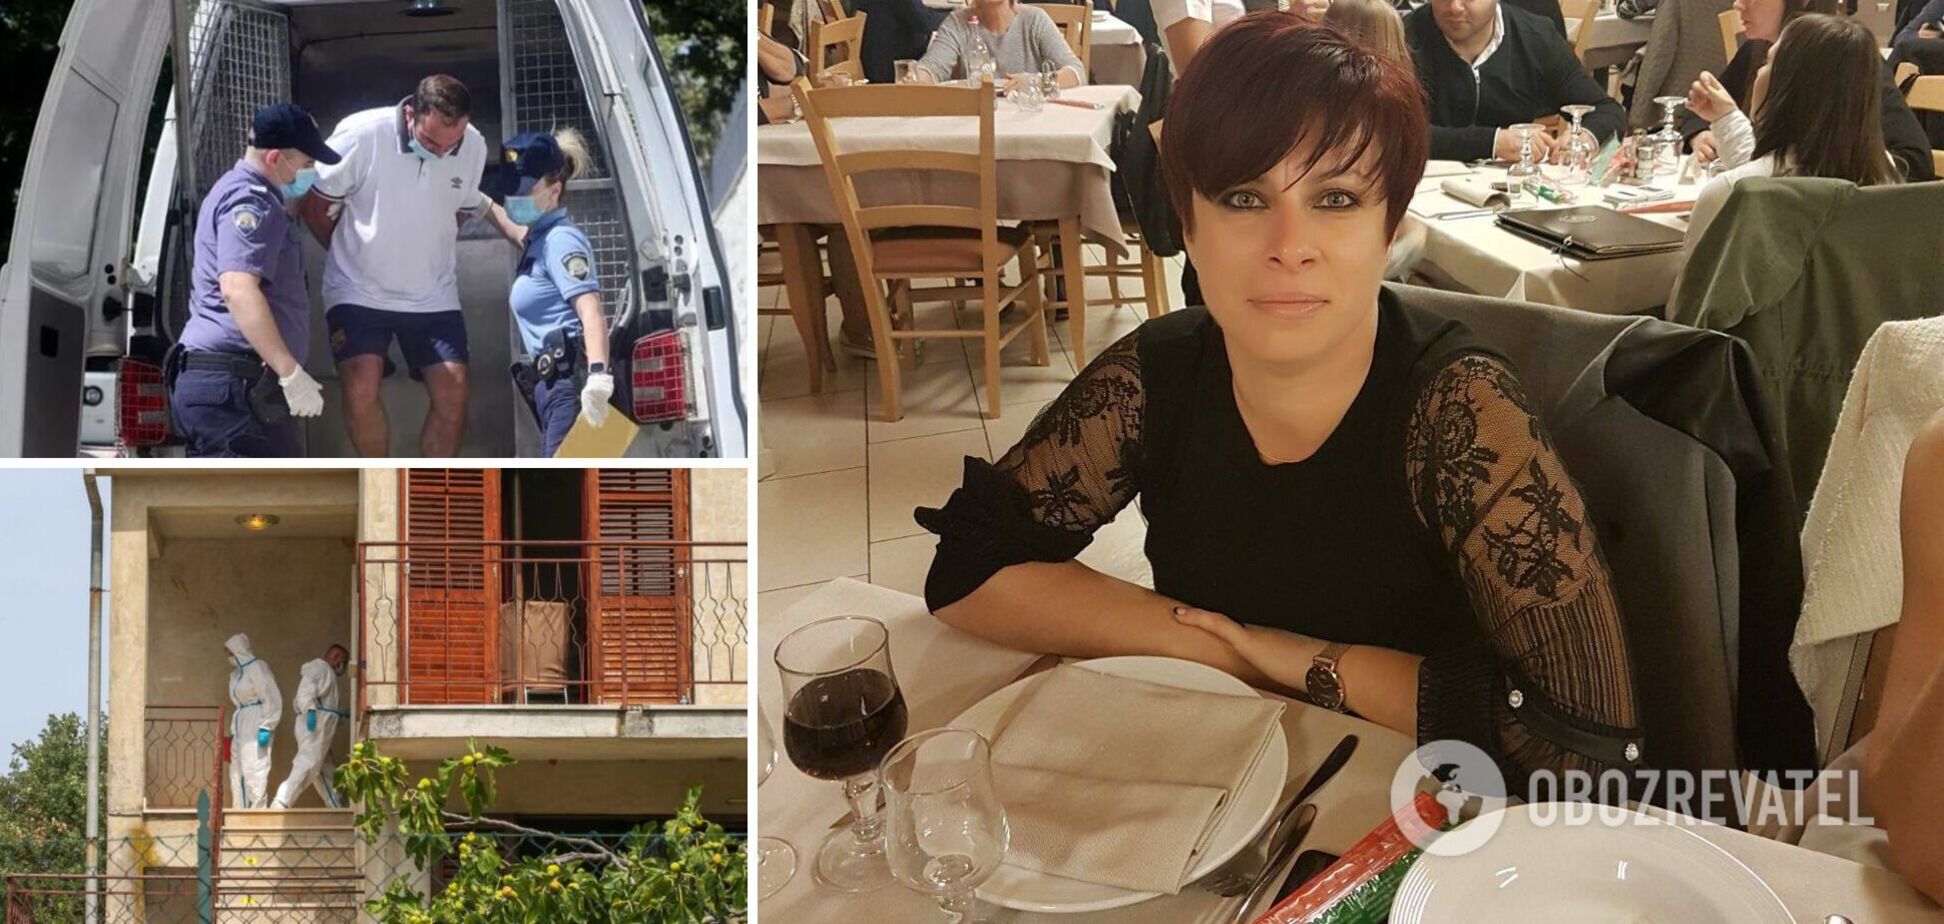 У Хорватії італієць до смерті забив українку, з якою зустрічався: подробиці трагедії